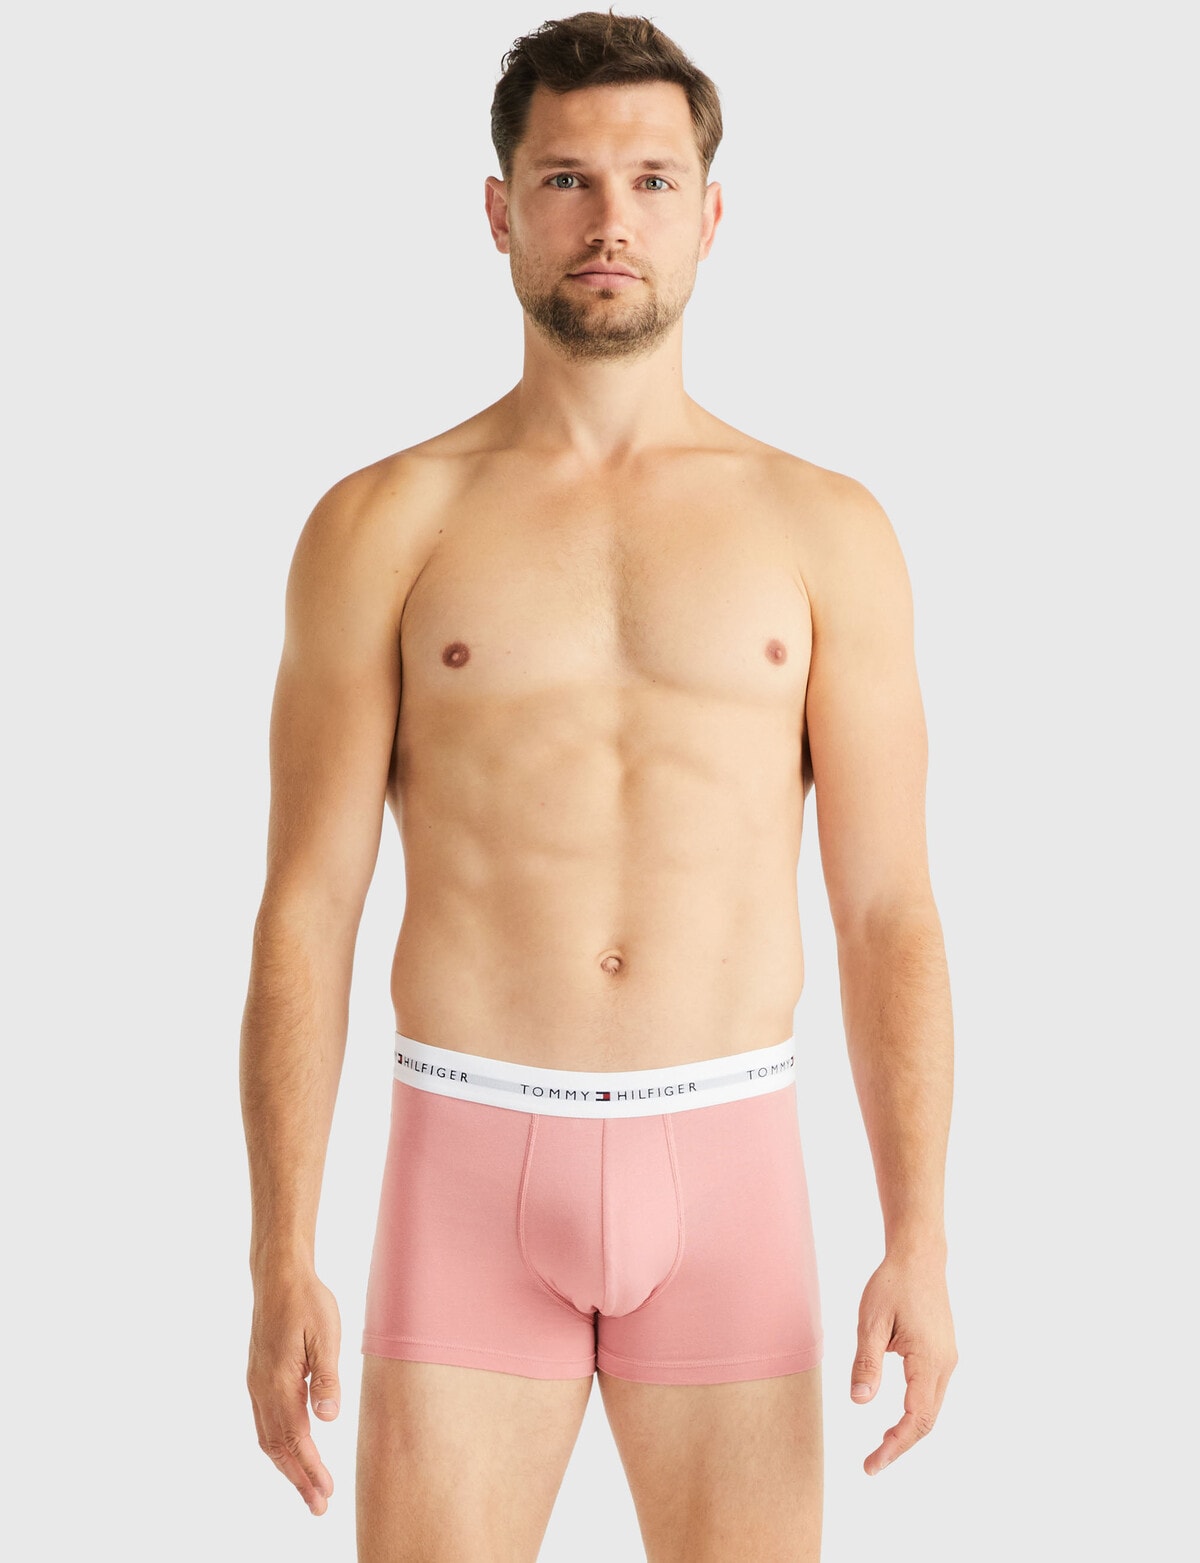 Tommy Hilfiger Cotton Trunk, 3-Pack, Black, Pink & White - Underwear